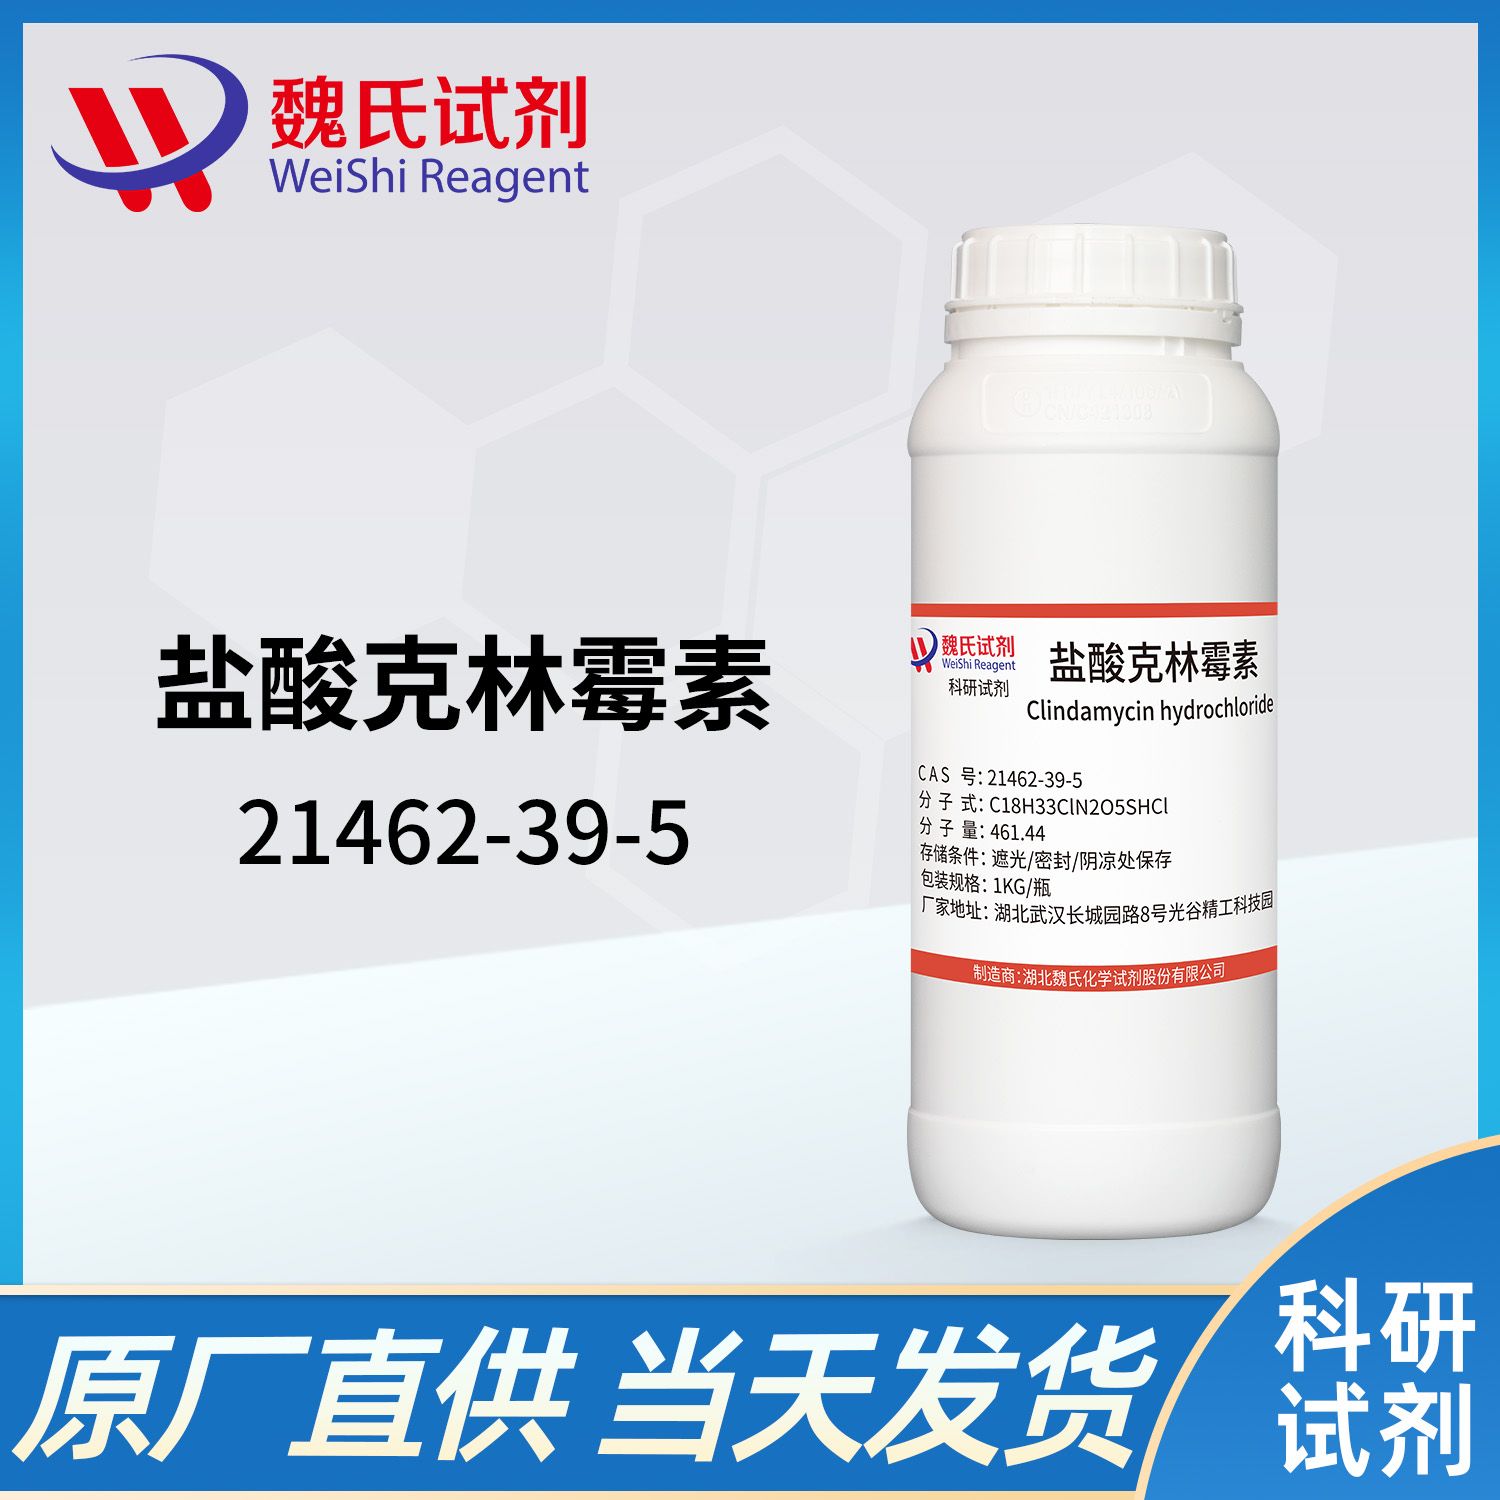 21462-39-5 /盐酸克林霉素；氯洁霉素/clindamycin hydrochloride